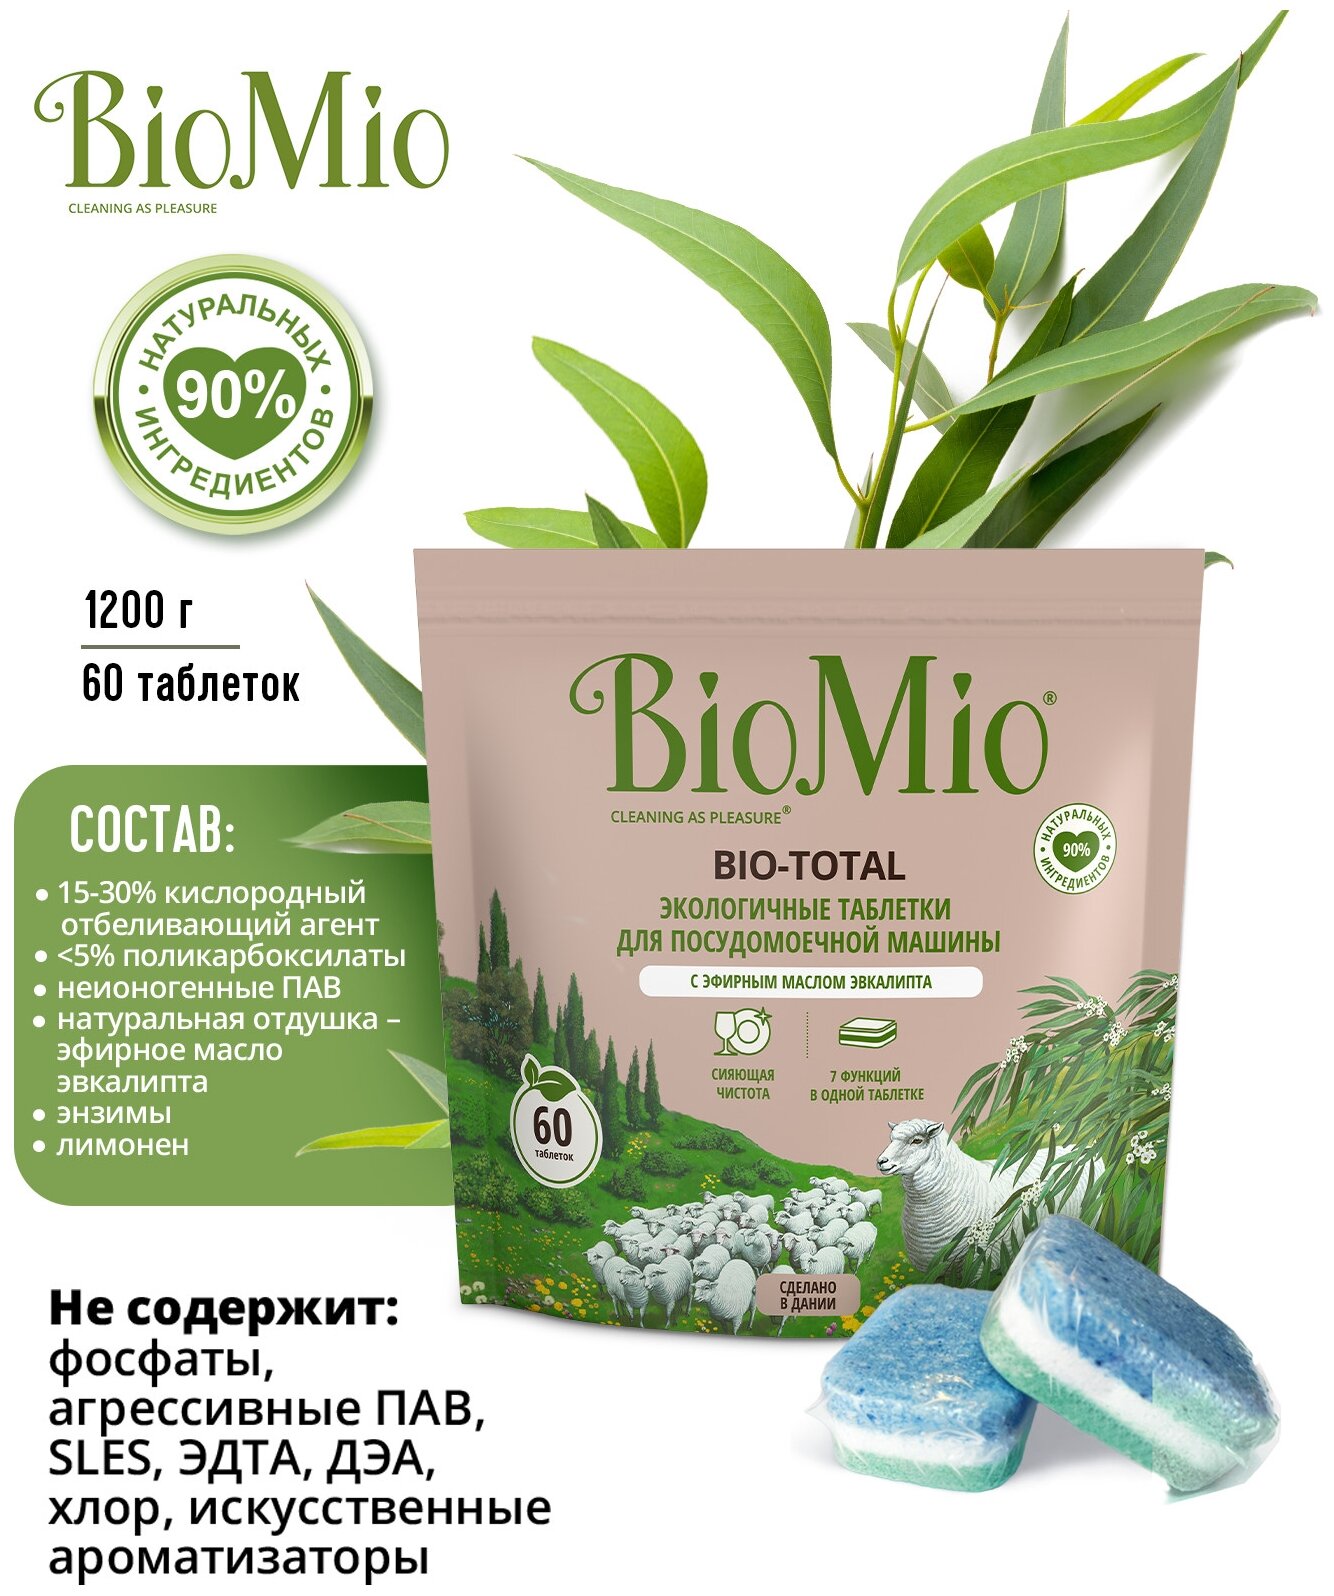 Экологичные таблетки BioMio Bio-Total 7в1 для посудомоечной машины, с эвкалиптом, 100шт. - фото №4